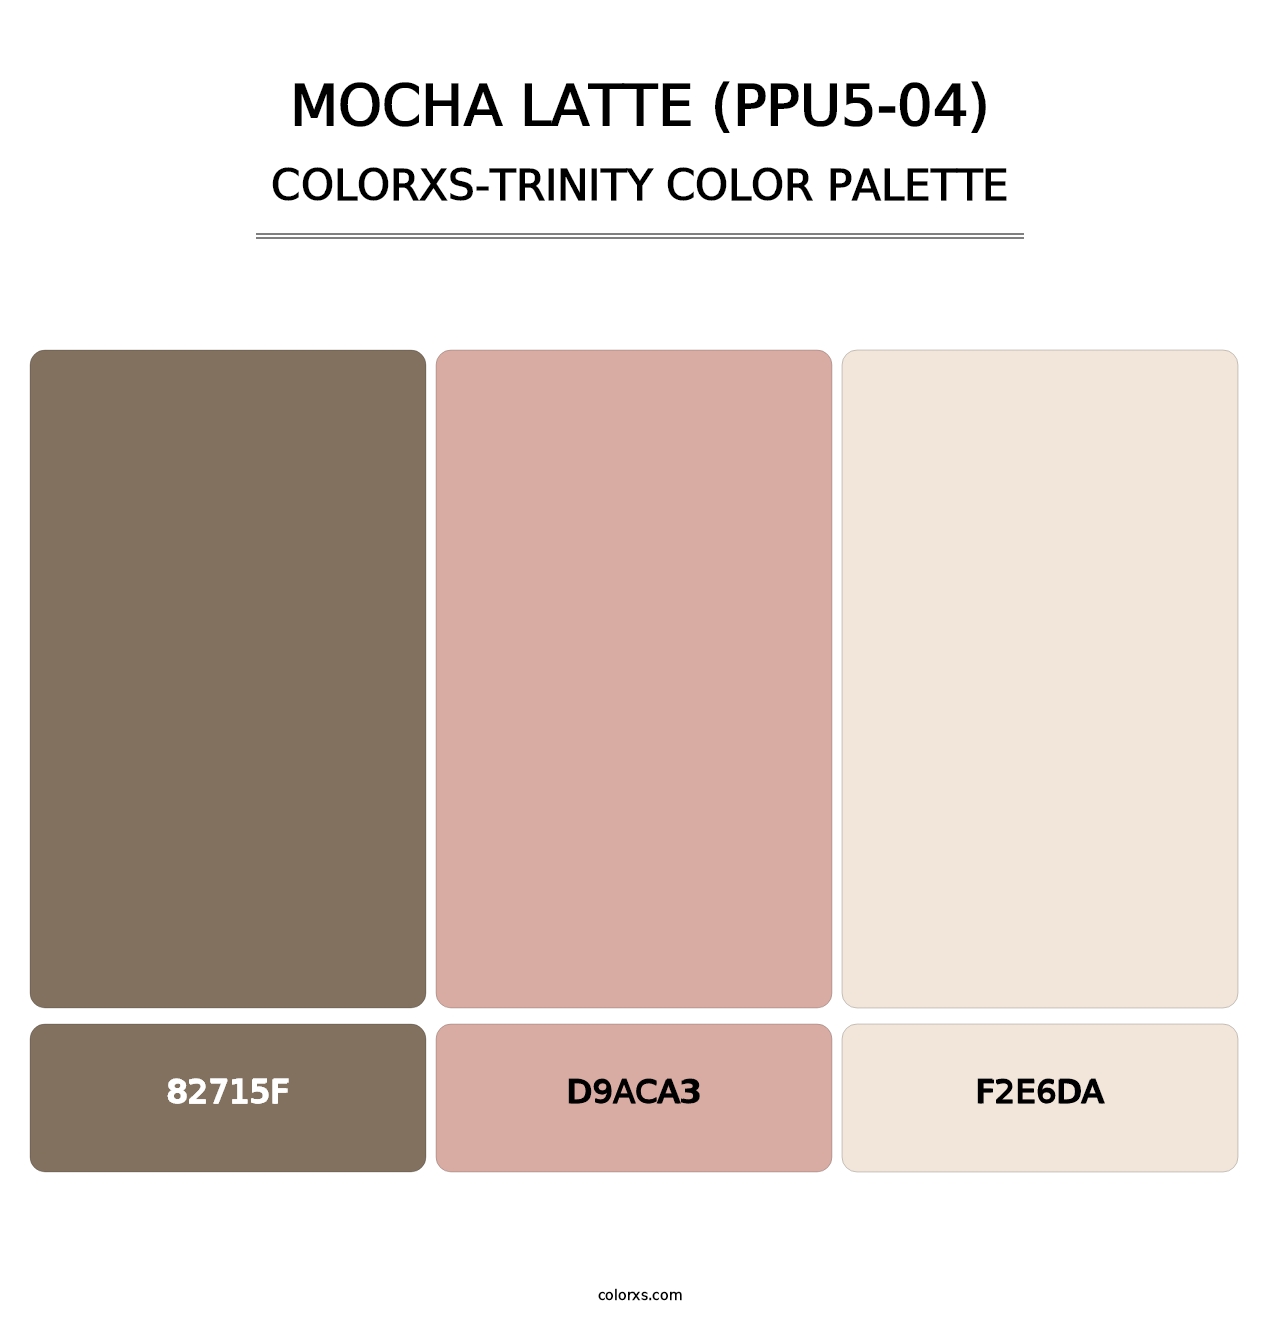 Mocha Latte (PPU5-04) - Colorxs Trinity Palette